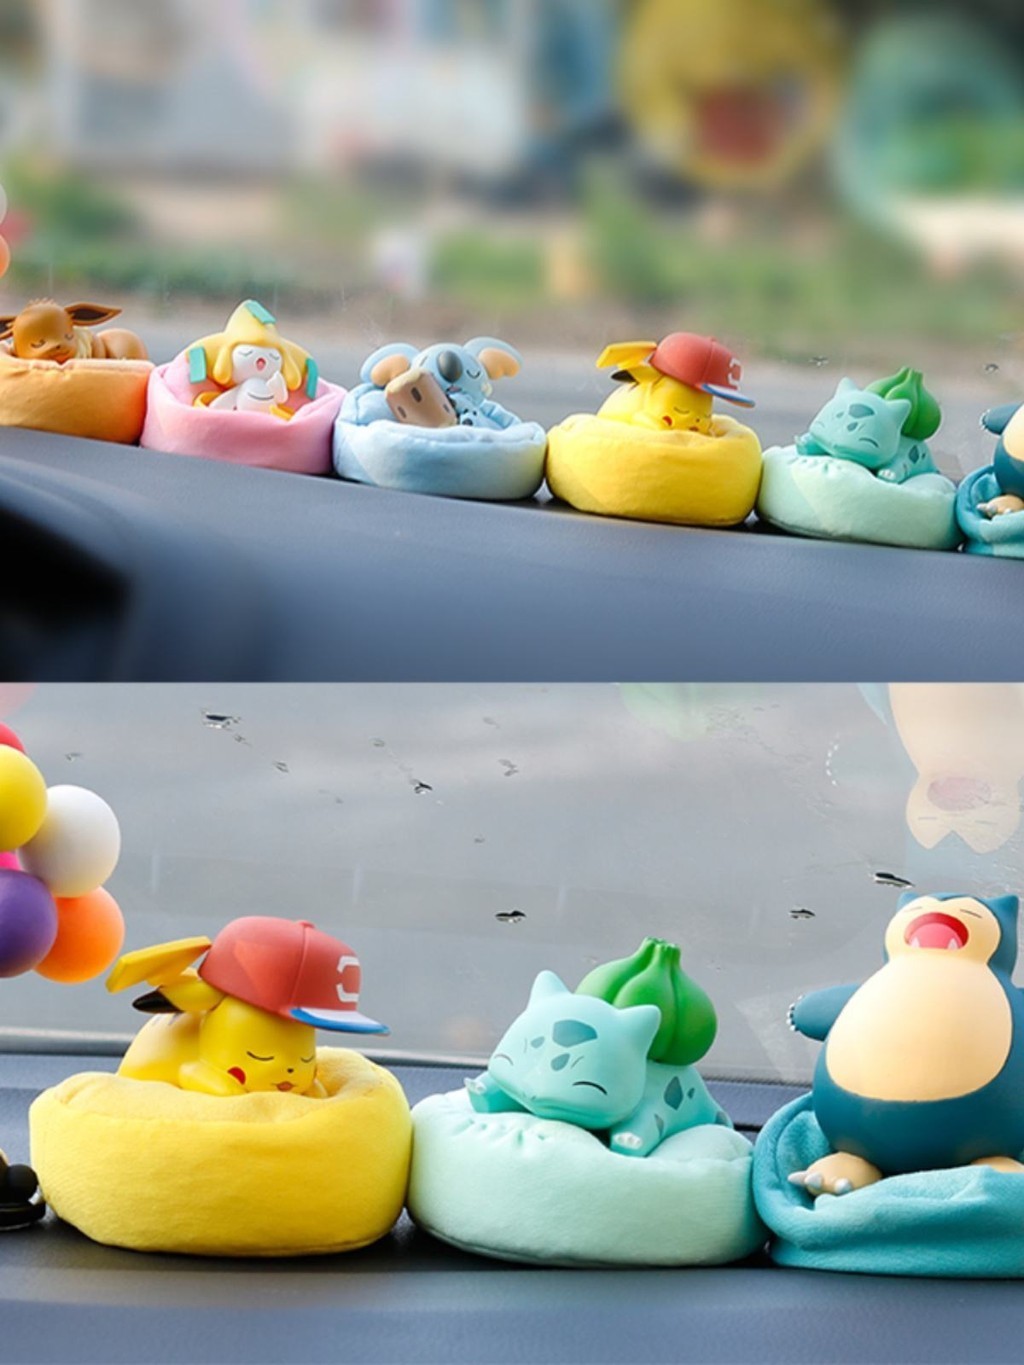 รูปบูติก Pokémon Sleeping Posture Series กล่องปริศนาอินเทรนด์ Pokémon Pikachu Car Doll Figure Doll Toy